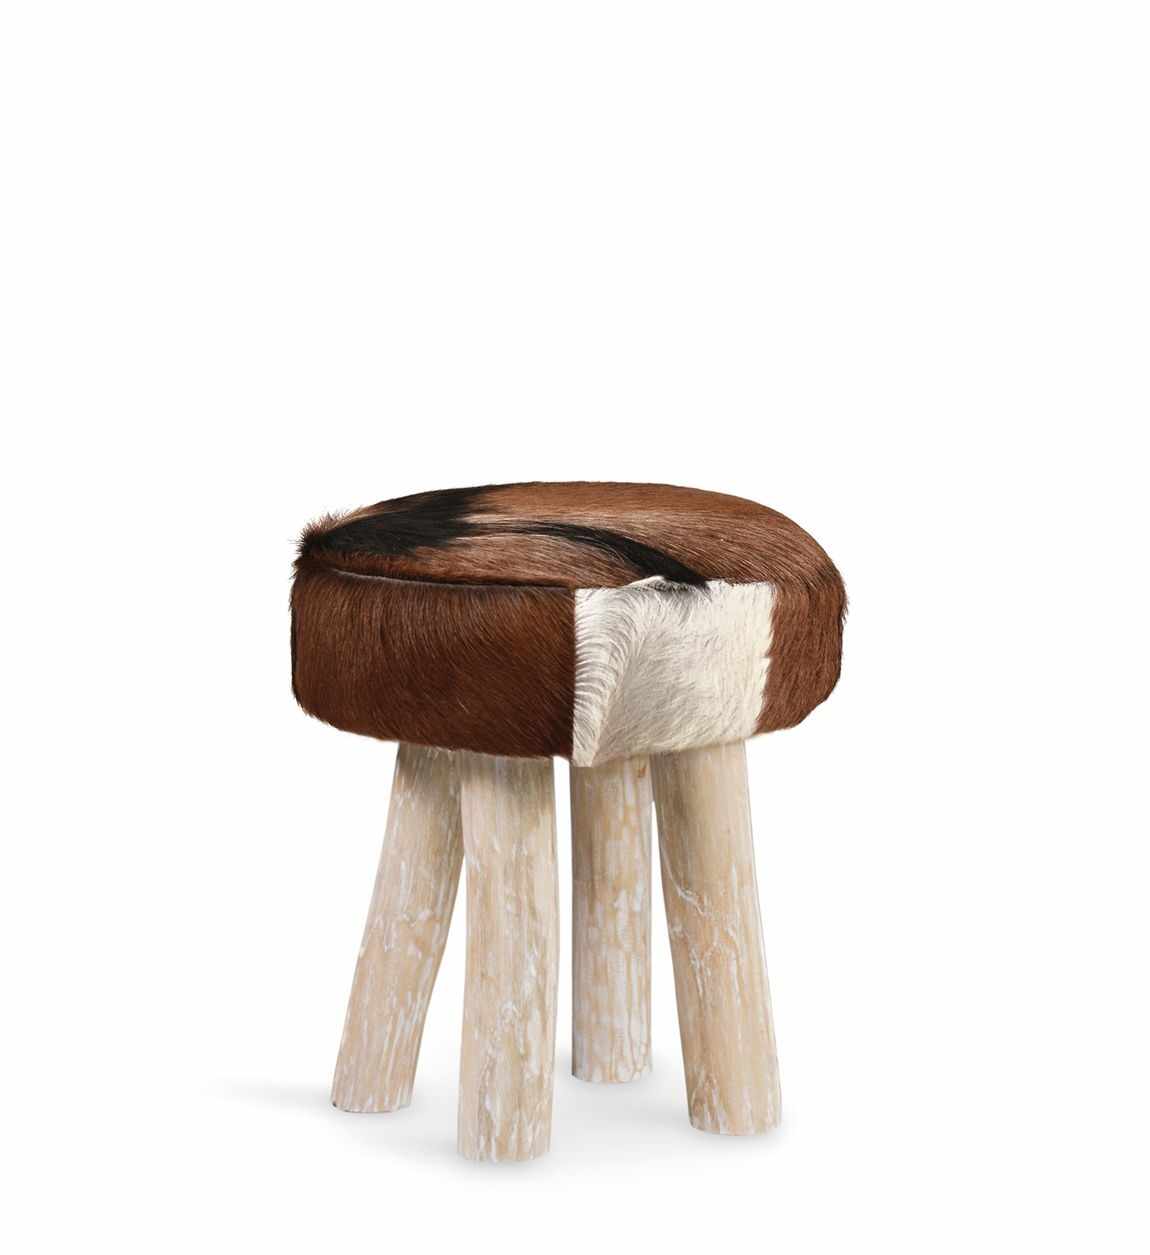  Taburet tapitat cu piele naturala si picioare din lemn Goat Maro / Natural, Ø38xH45 cm la pret 1041 lei 